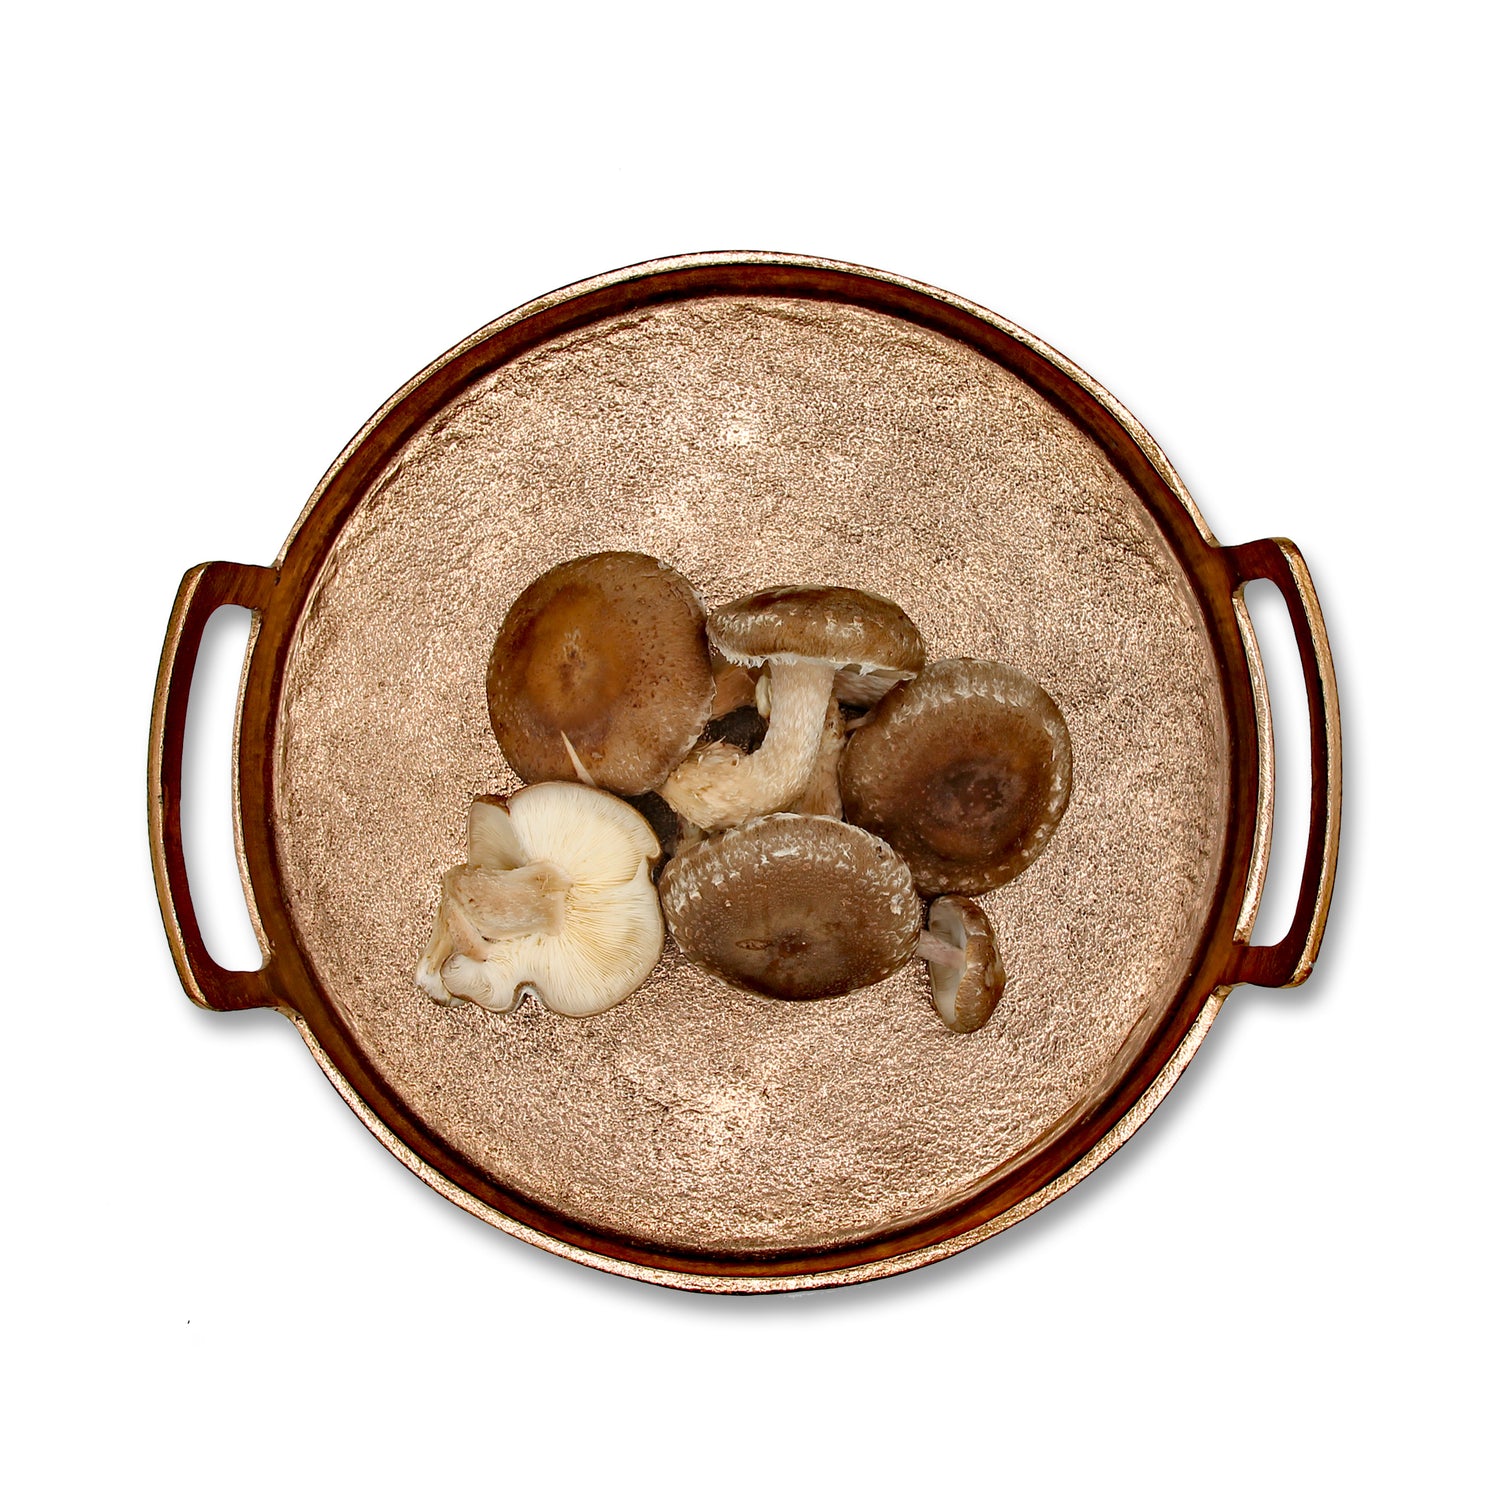 Log Grown Shiitake Mushrooms